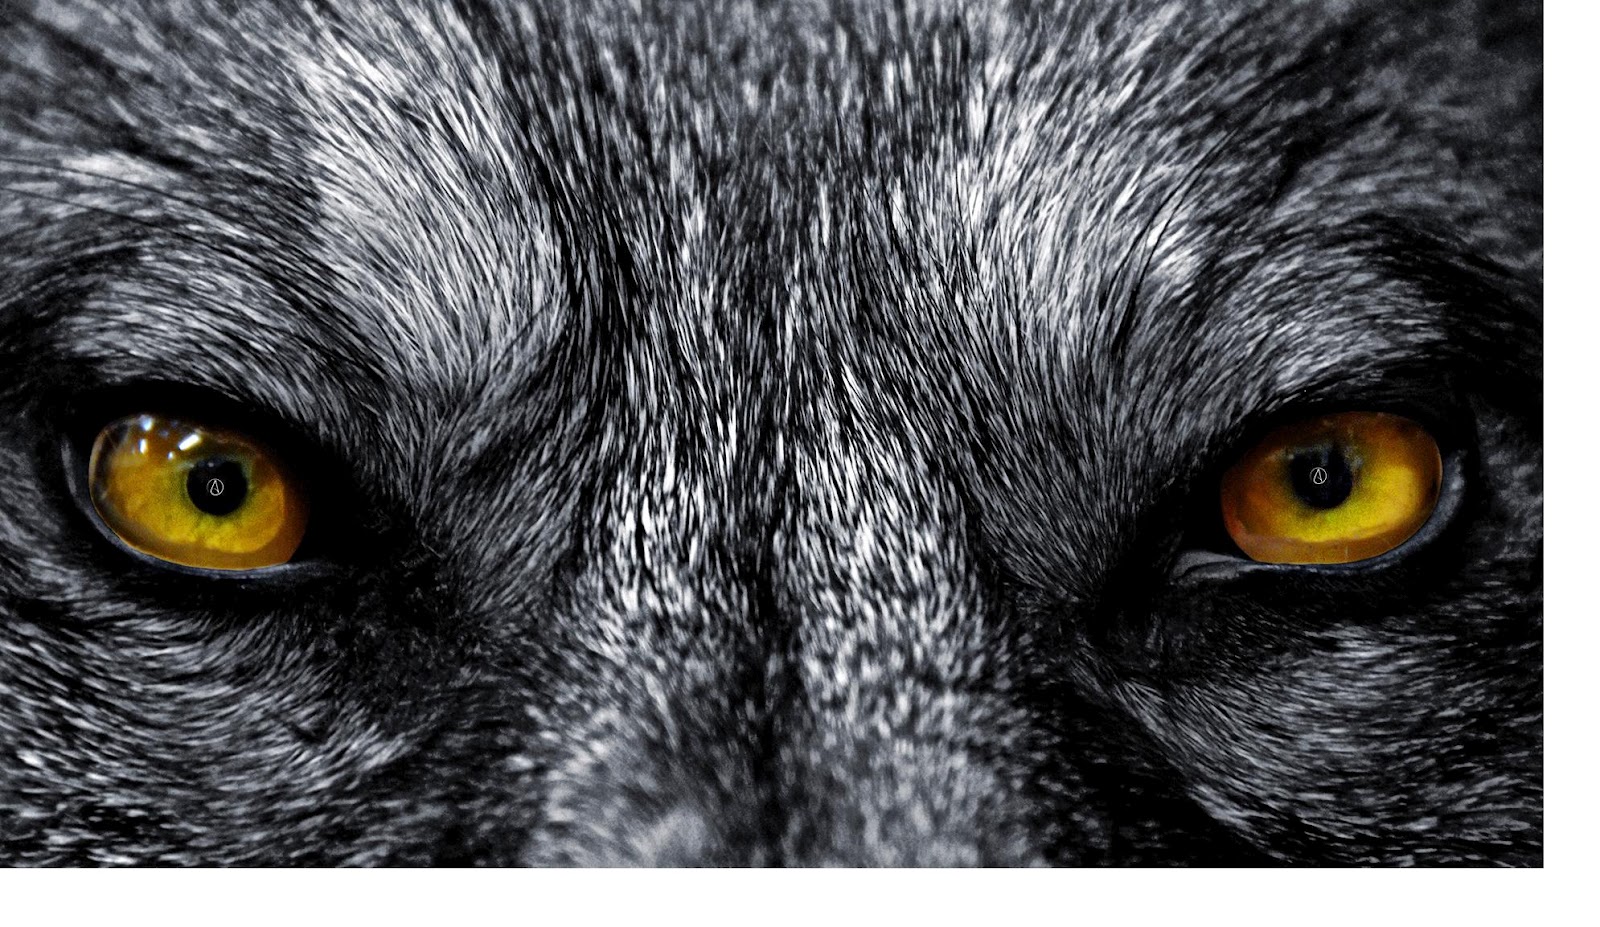 wolf eyes wallpaper,close up,canidae,eye,dog,dog breed